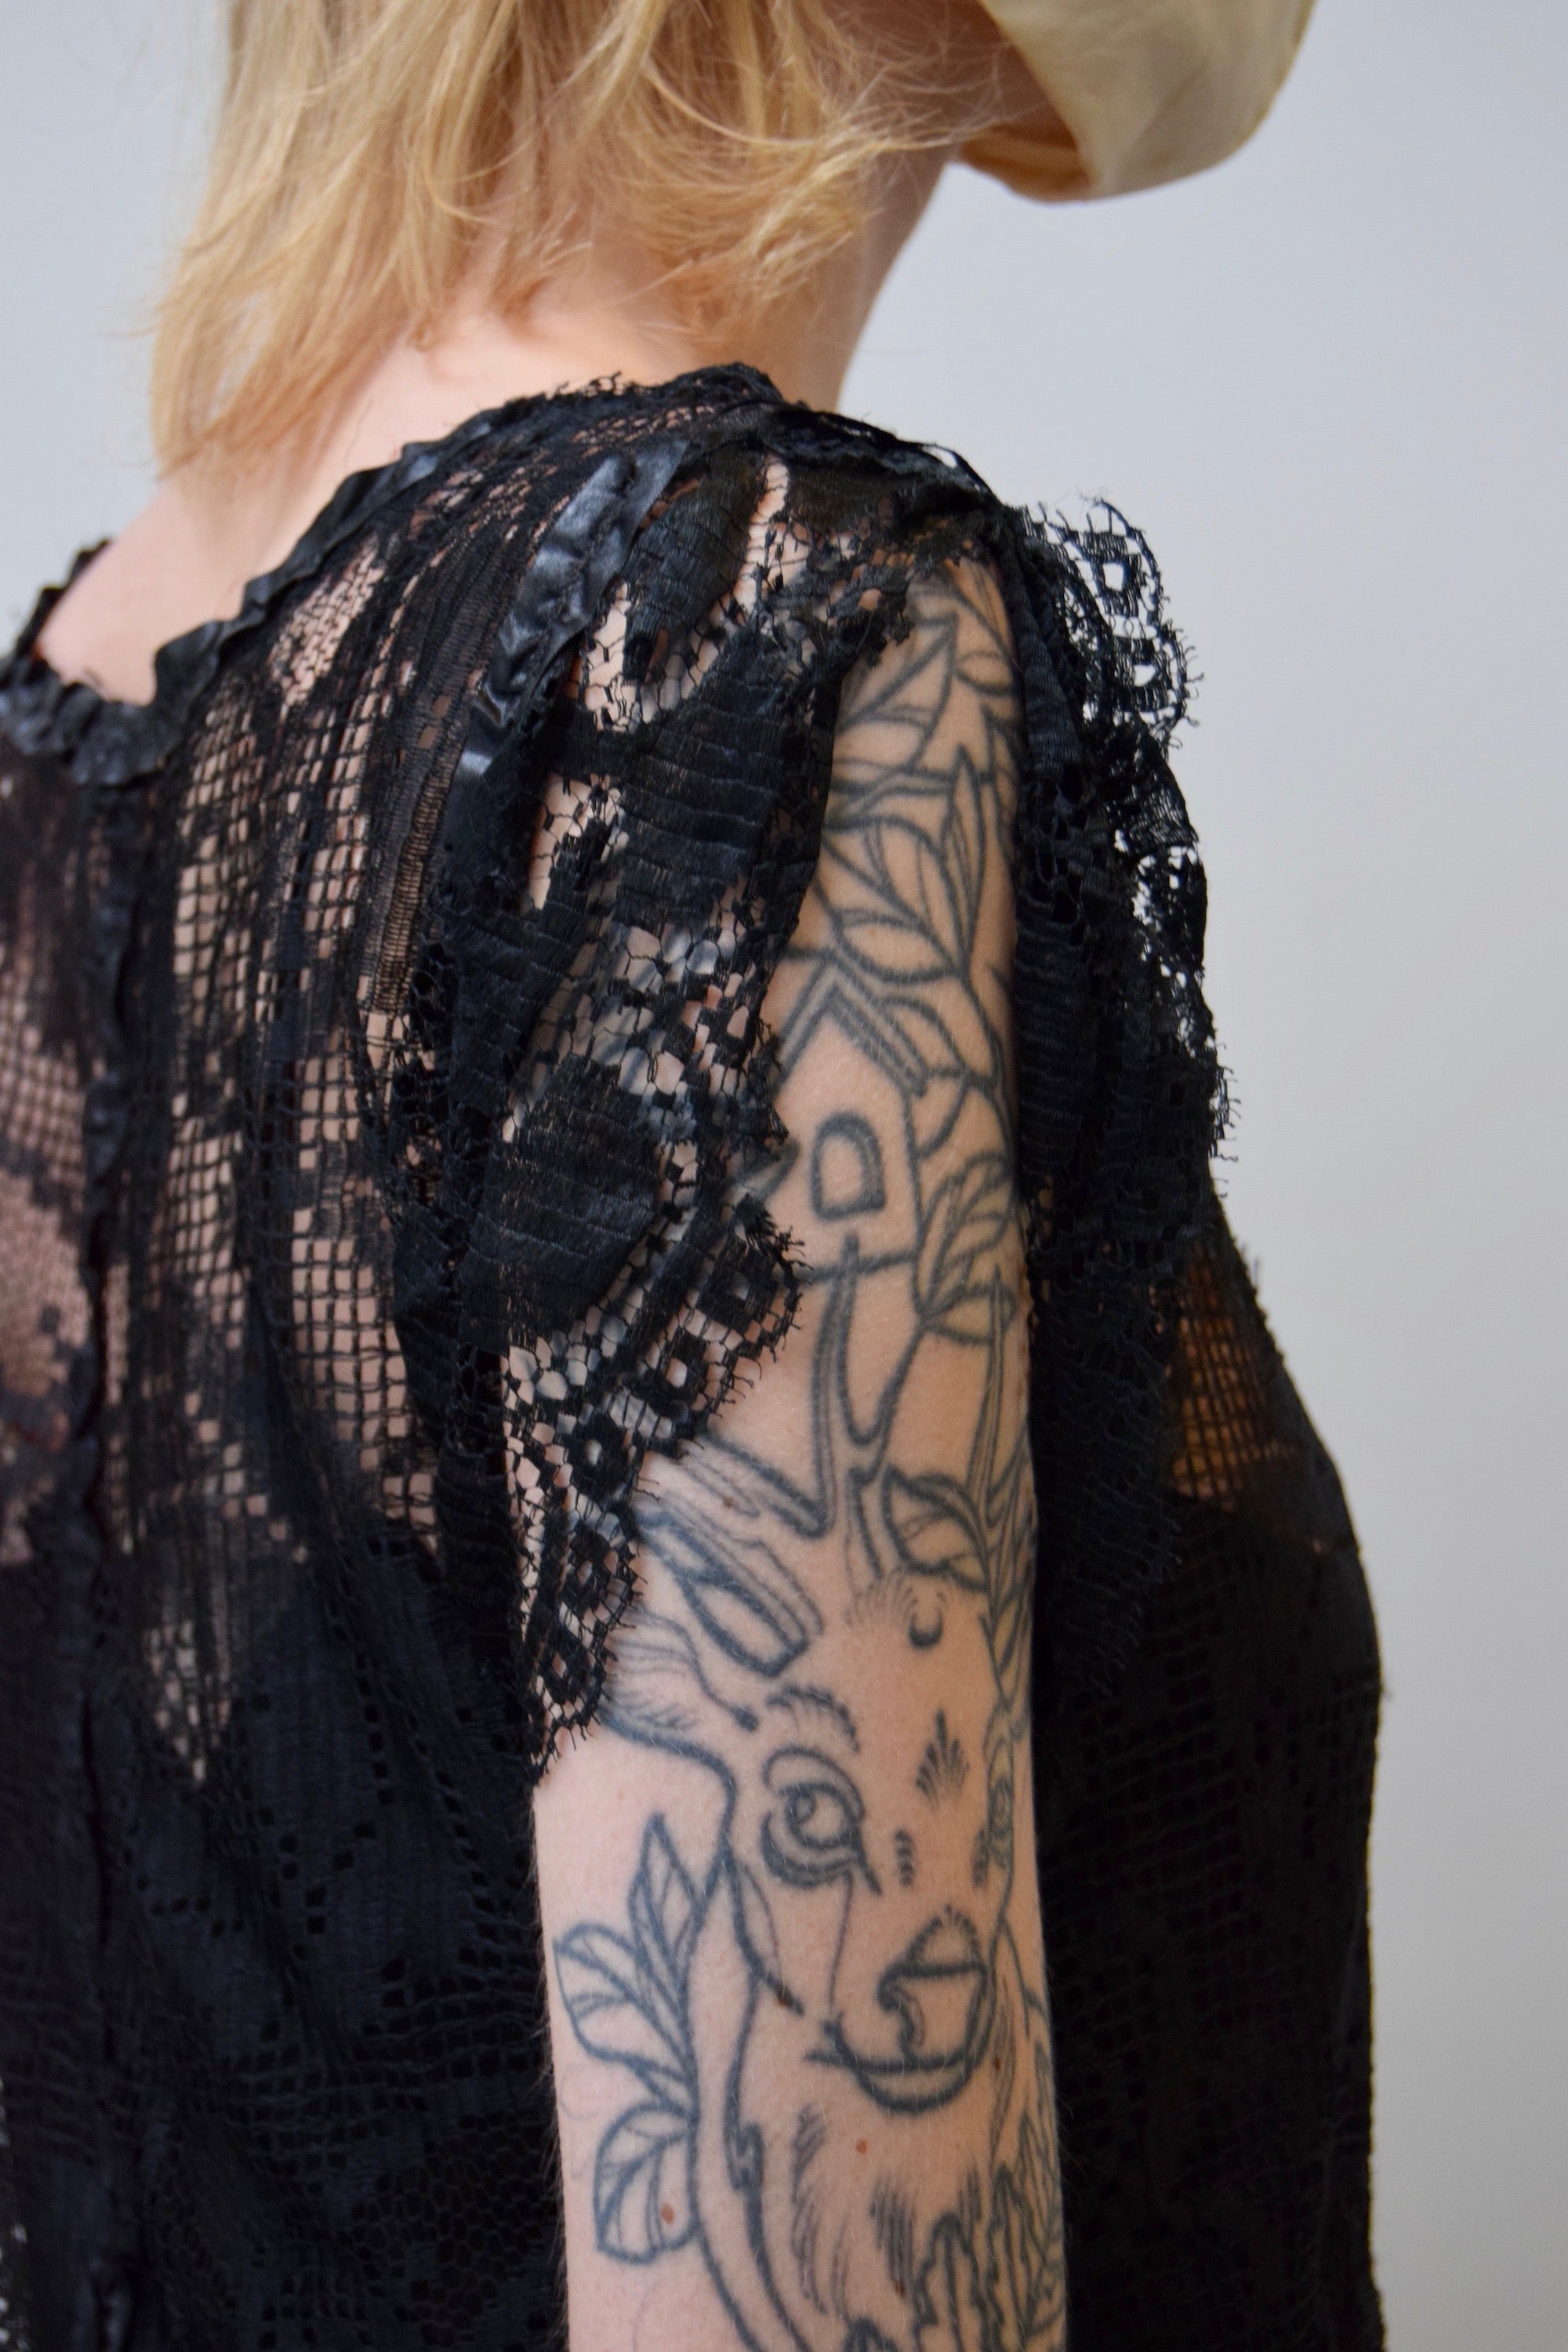 Antique Black Lace Net Dress